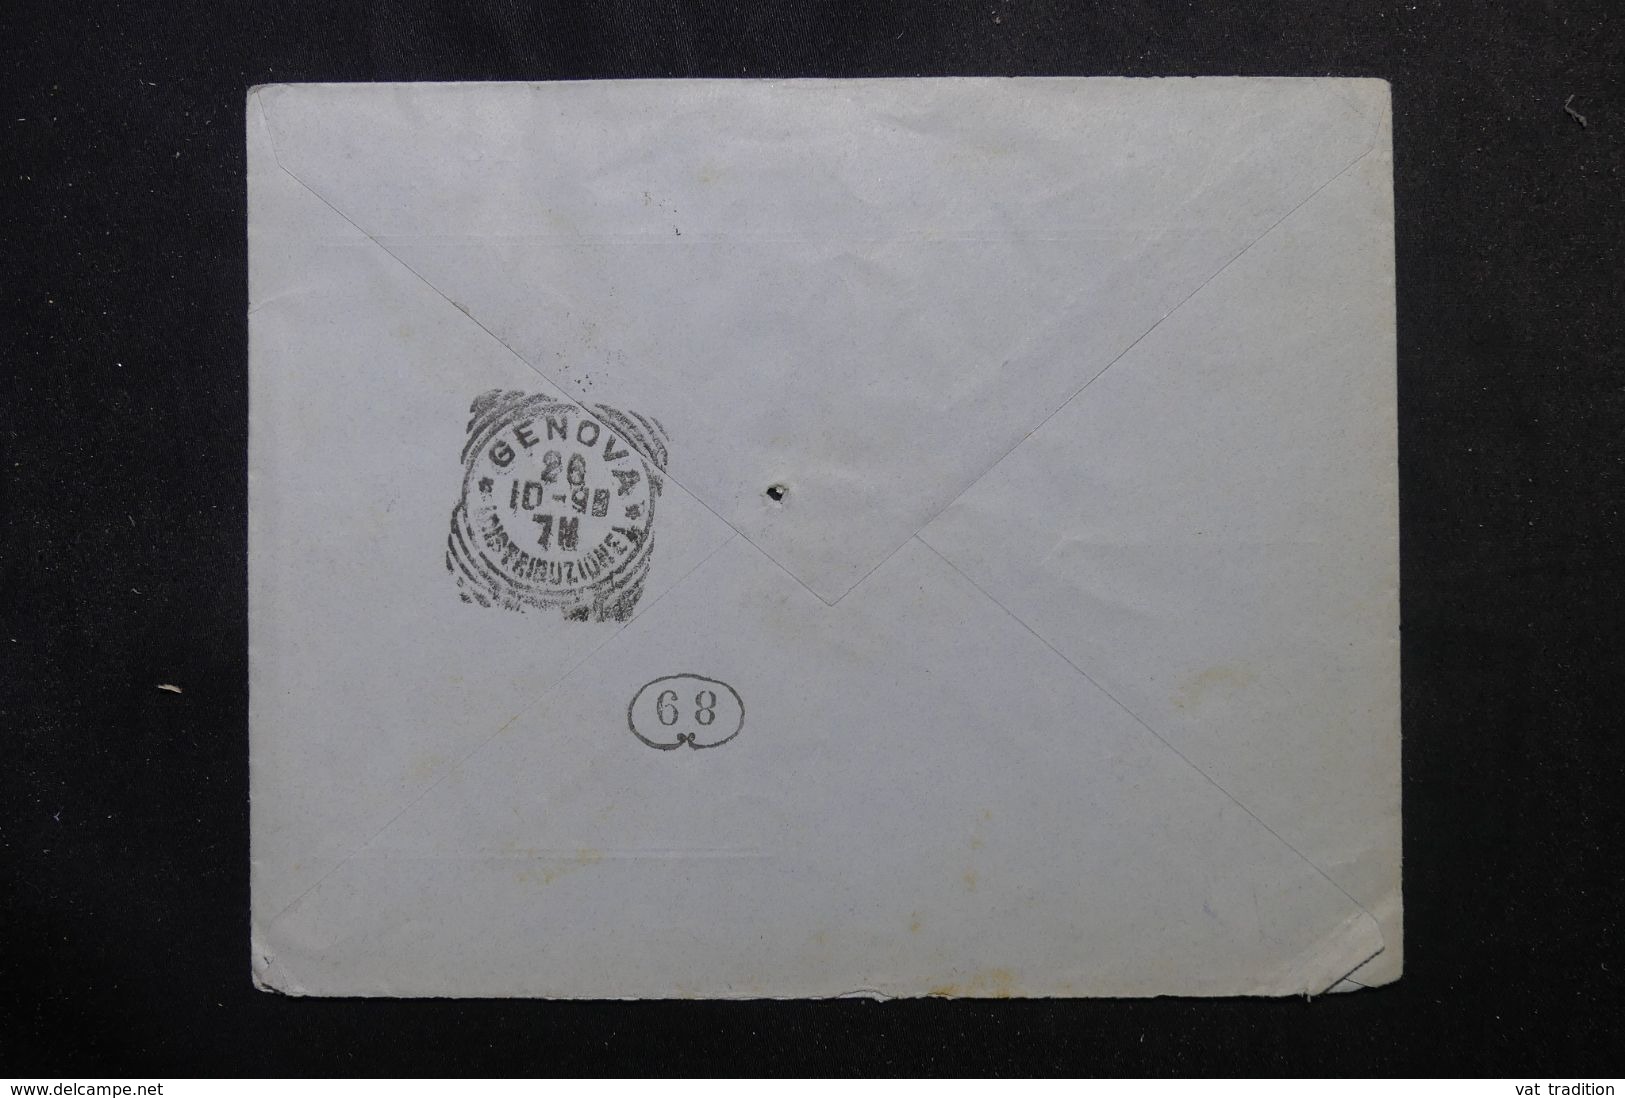 GRECE - Enveloppe Commerciale De Athènes Pour L'Italie En 1898, Affranchissement Plaisant - L 63180 - Lettres & Documents